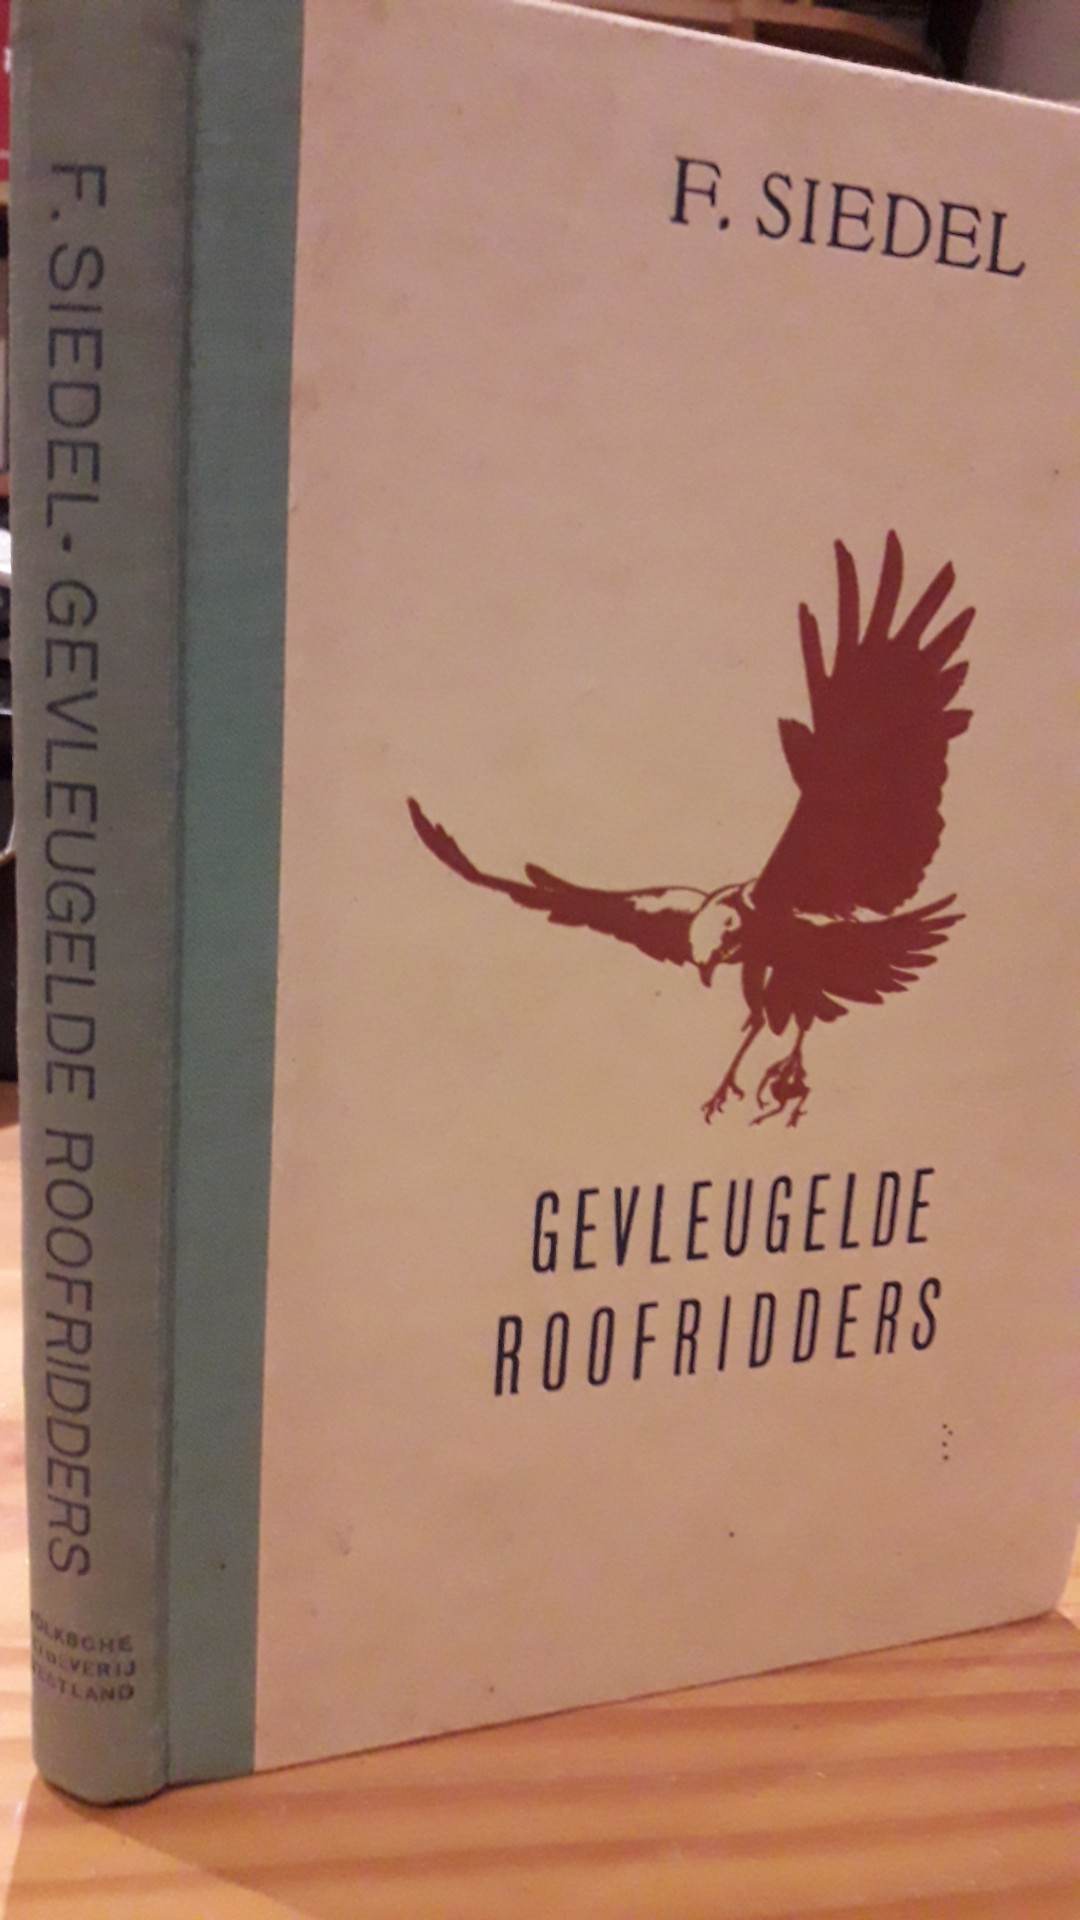 Gevleugelde roofridders - 135 blz / WESTLAND 1943 Nederlandse collaboratie uitgeverij